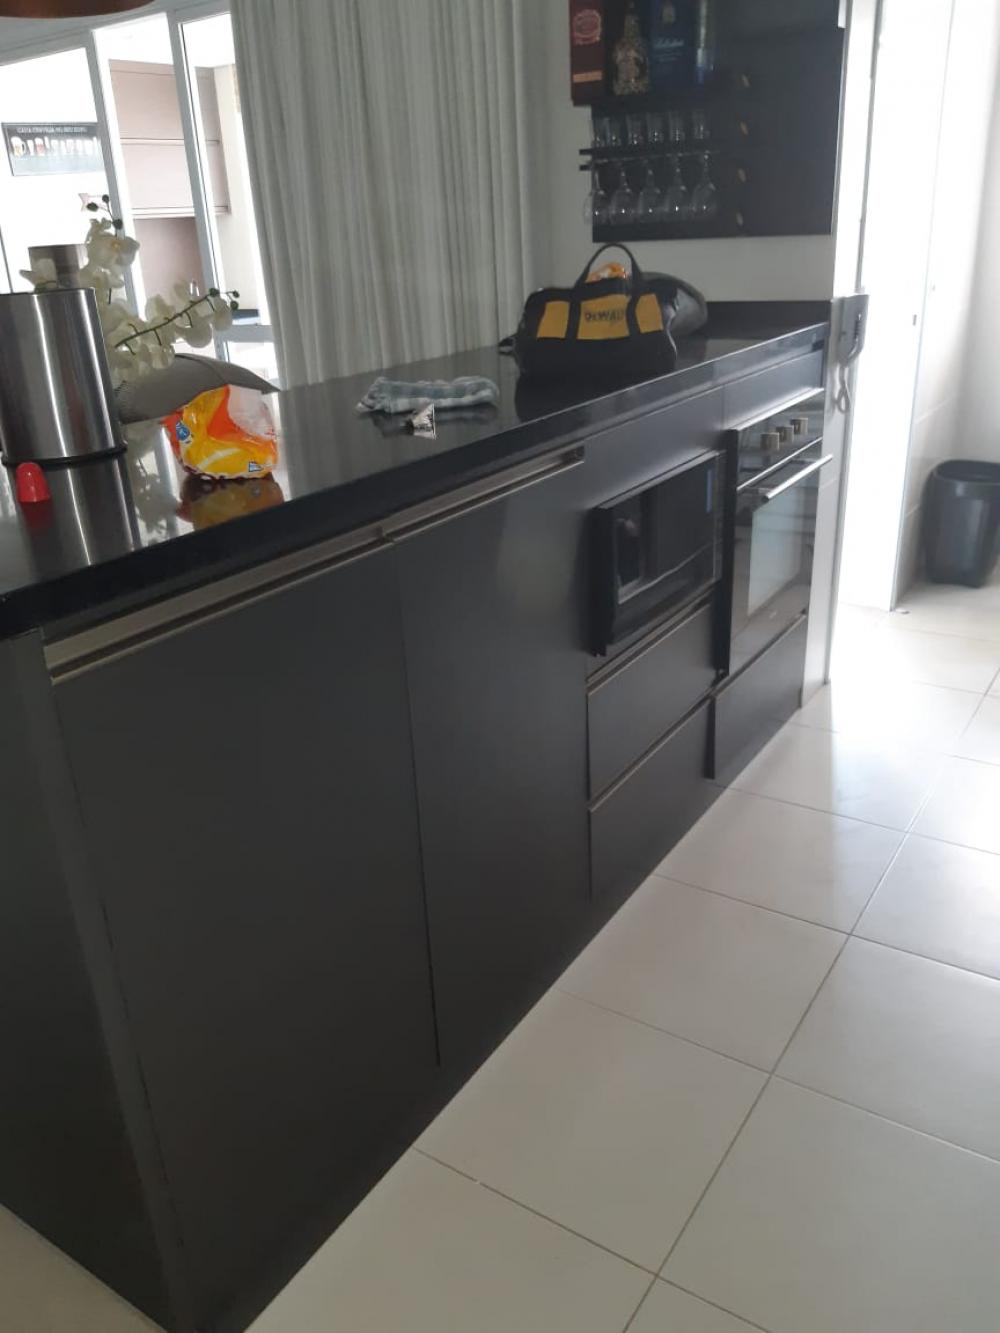 Alugar Apartamento / Padrão em São José do Rio Preto apenas R$ 3.000,00 - Foto 6